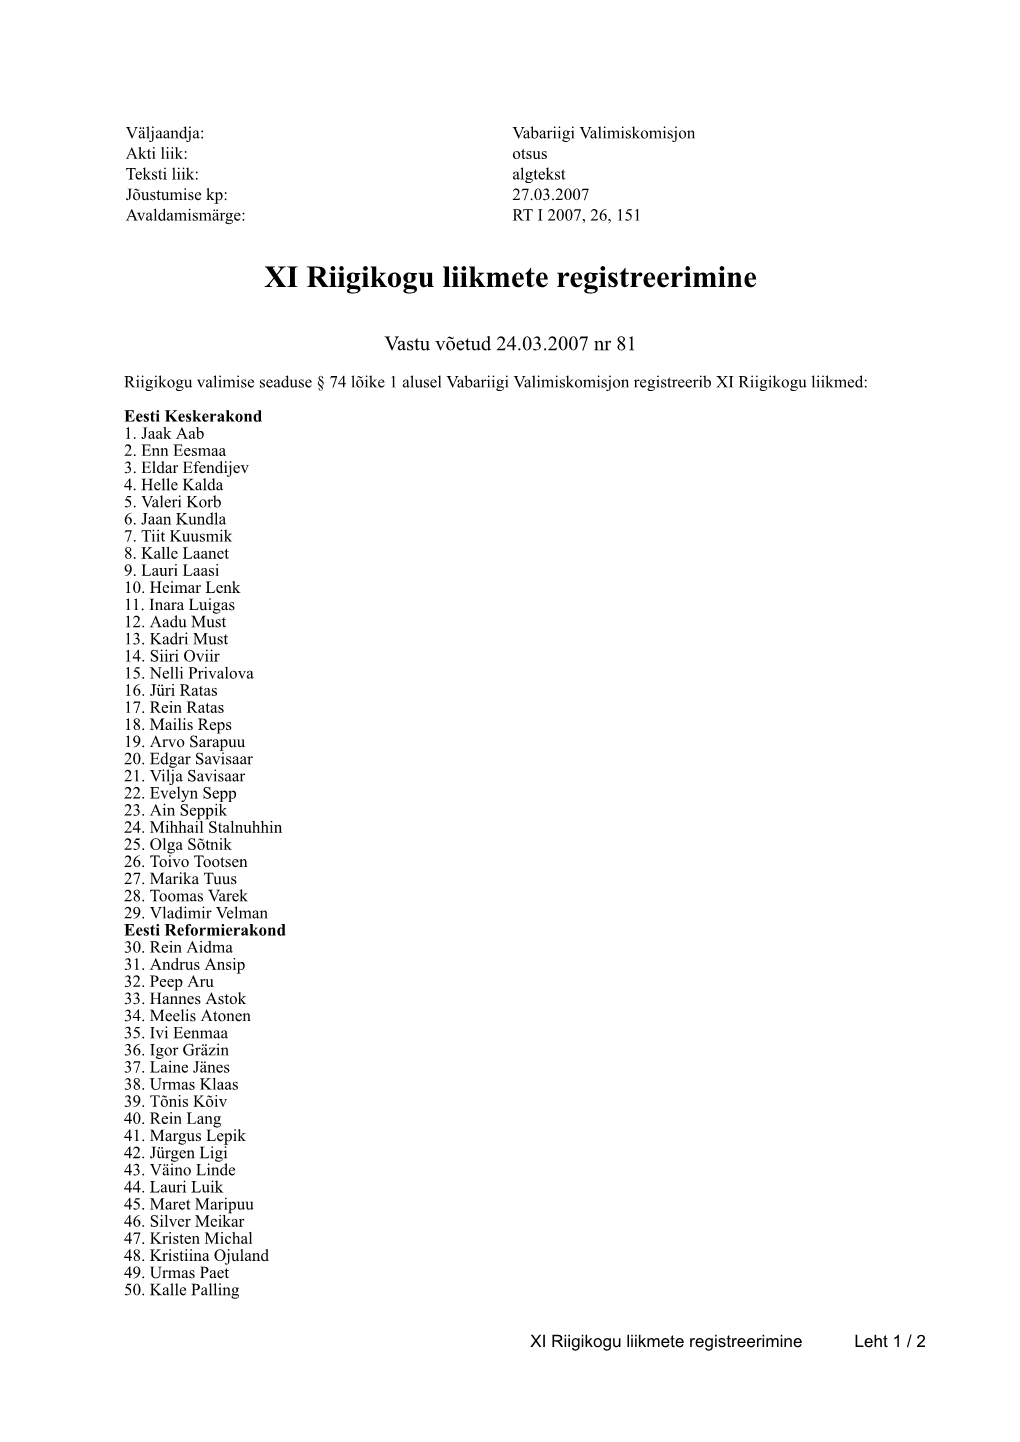 XI Riigikogu Liikmete Registreerimine